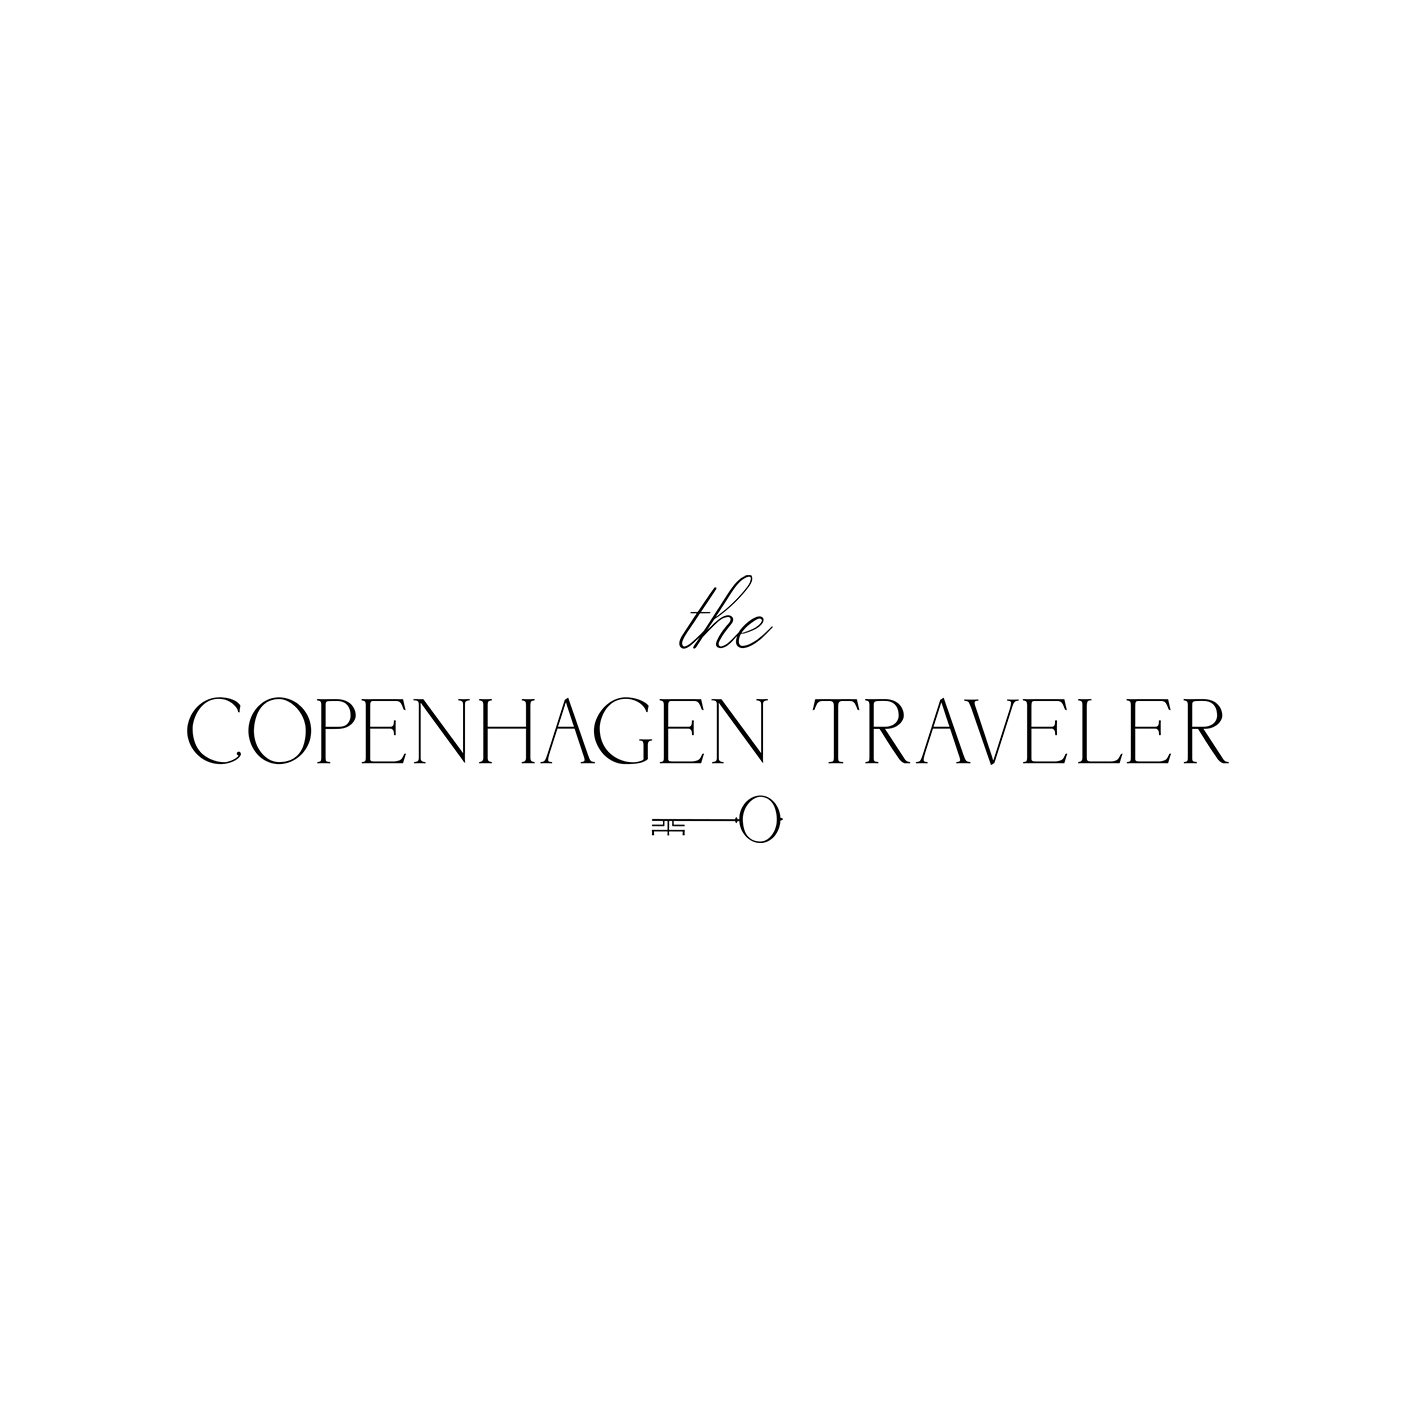 The Copenhagen traveler logo